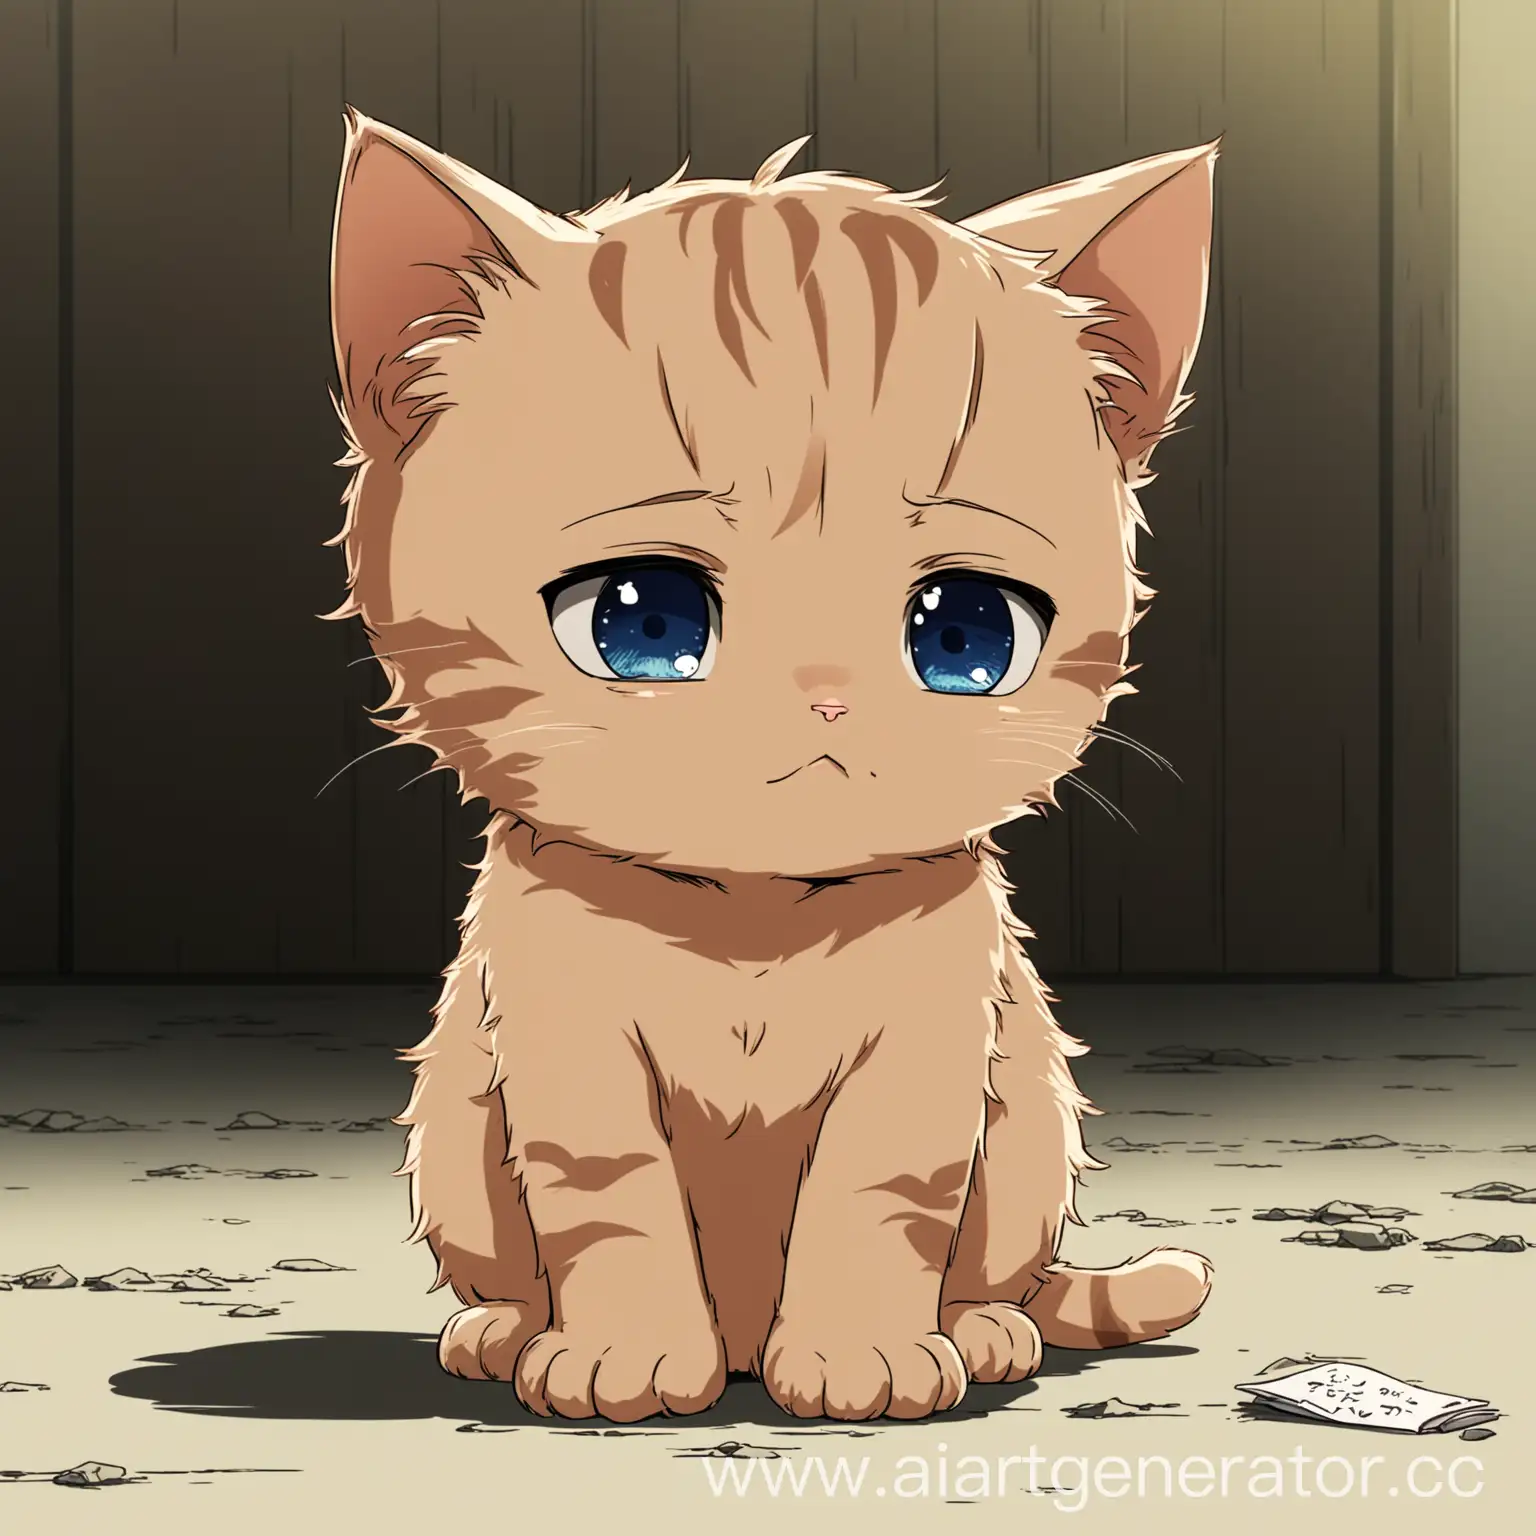 Sad-Little-Kitten-Anime-Cartoon-Illustration-of-a-Heartwarming-Story